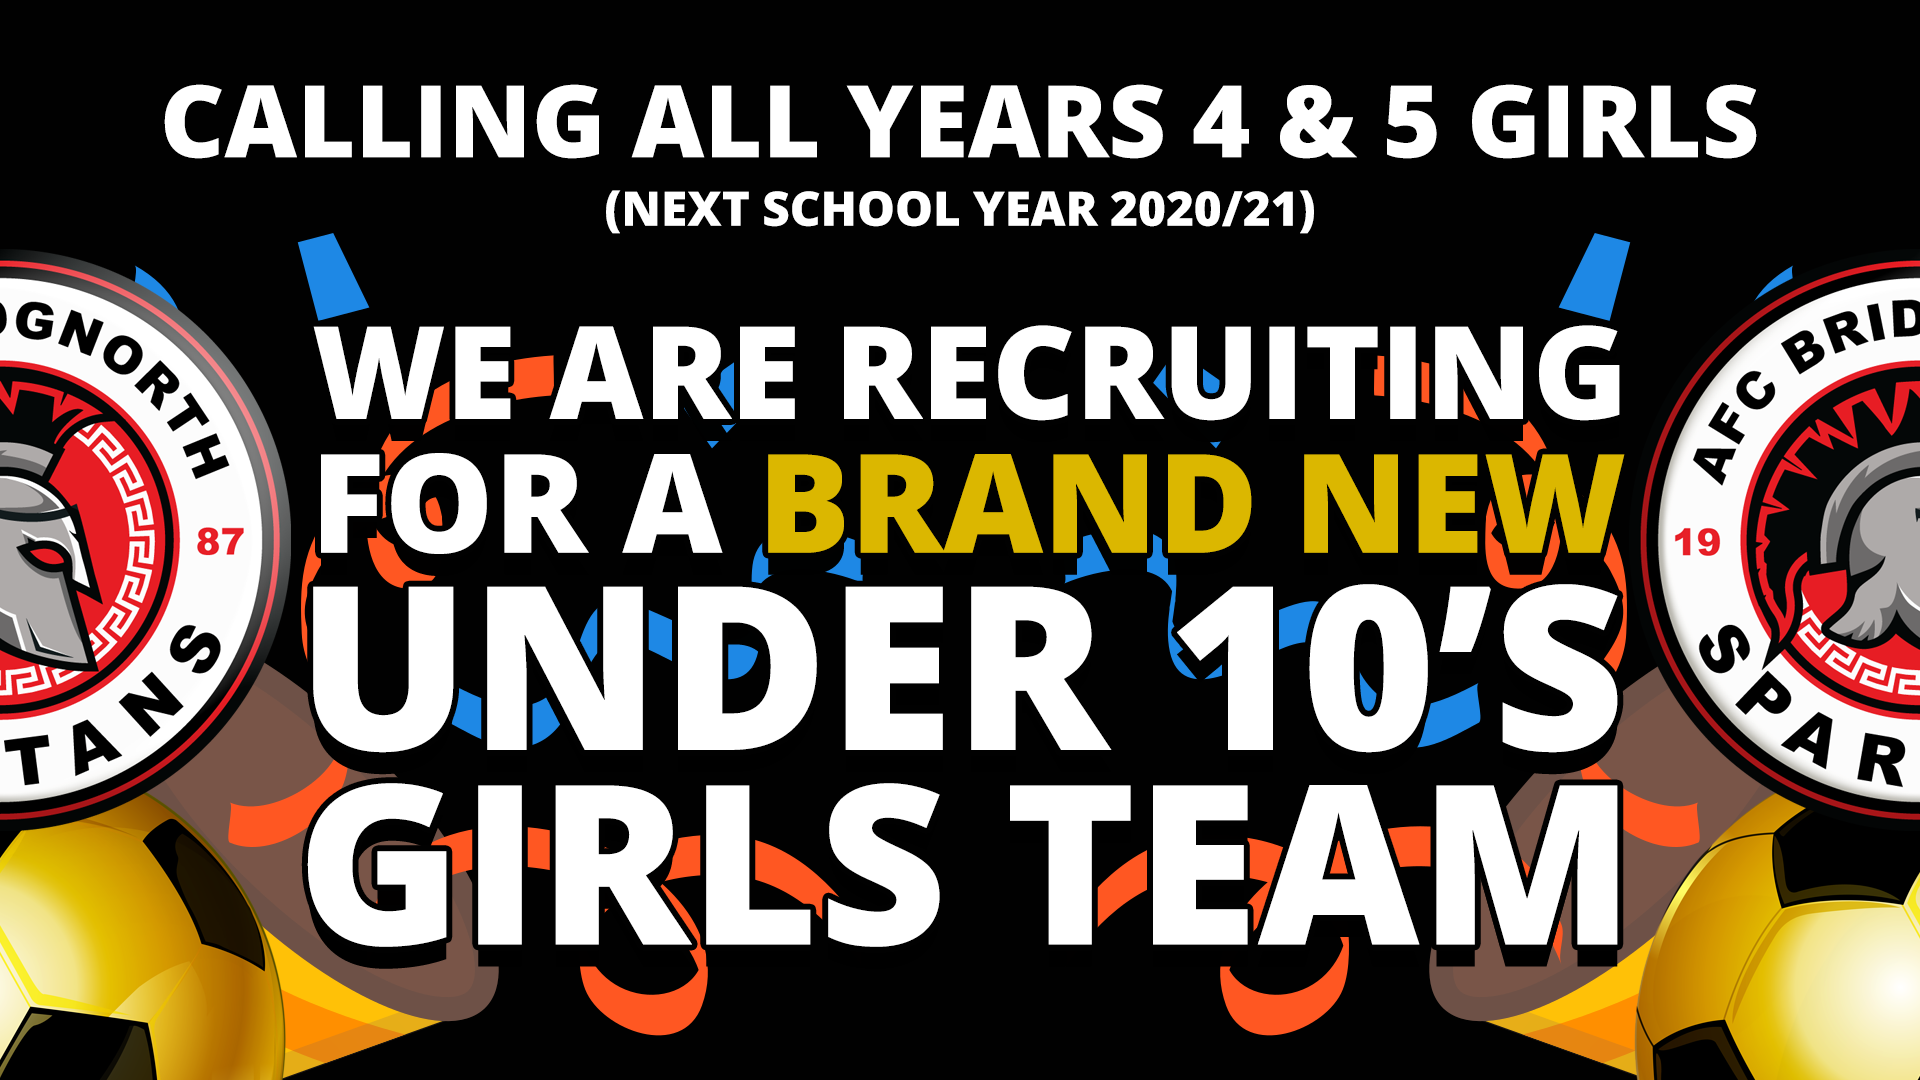 afc-brisgnorth-spartans-under-10s-girls-team-recruitment